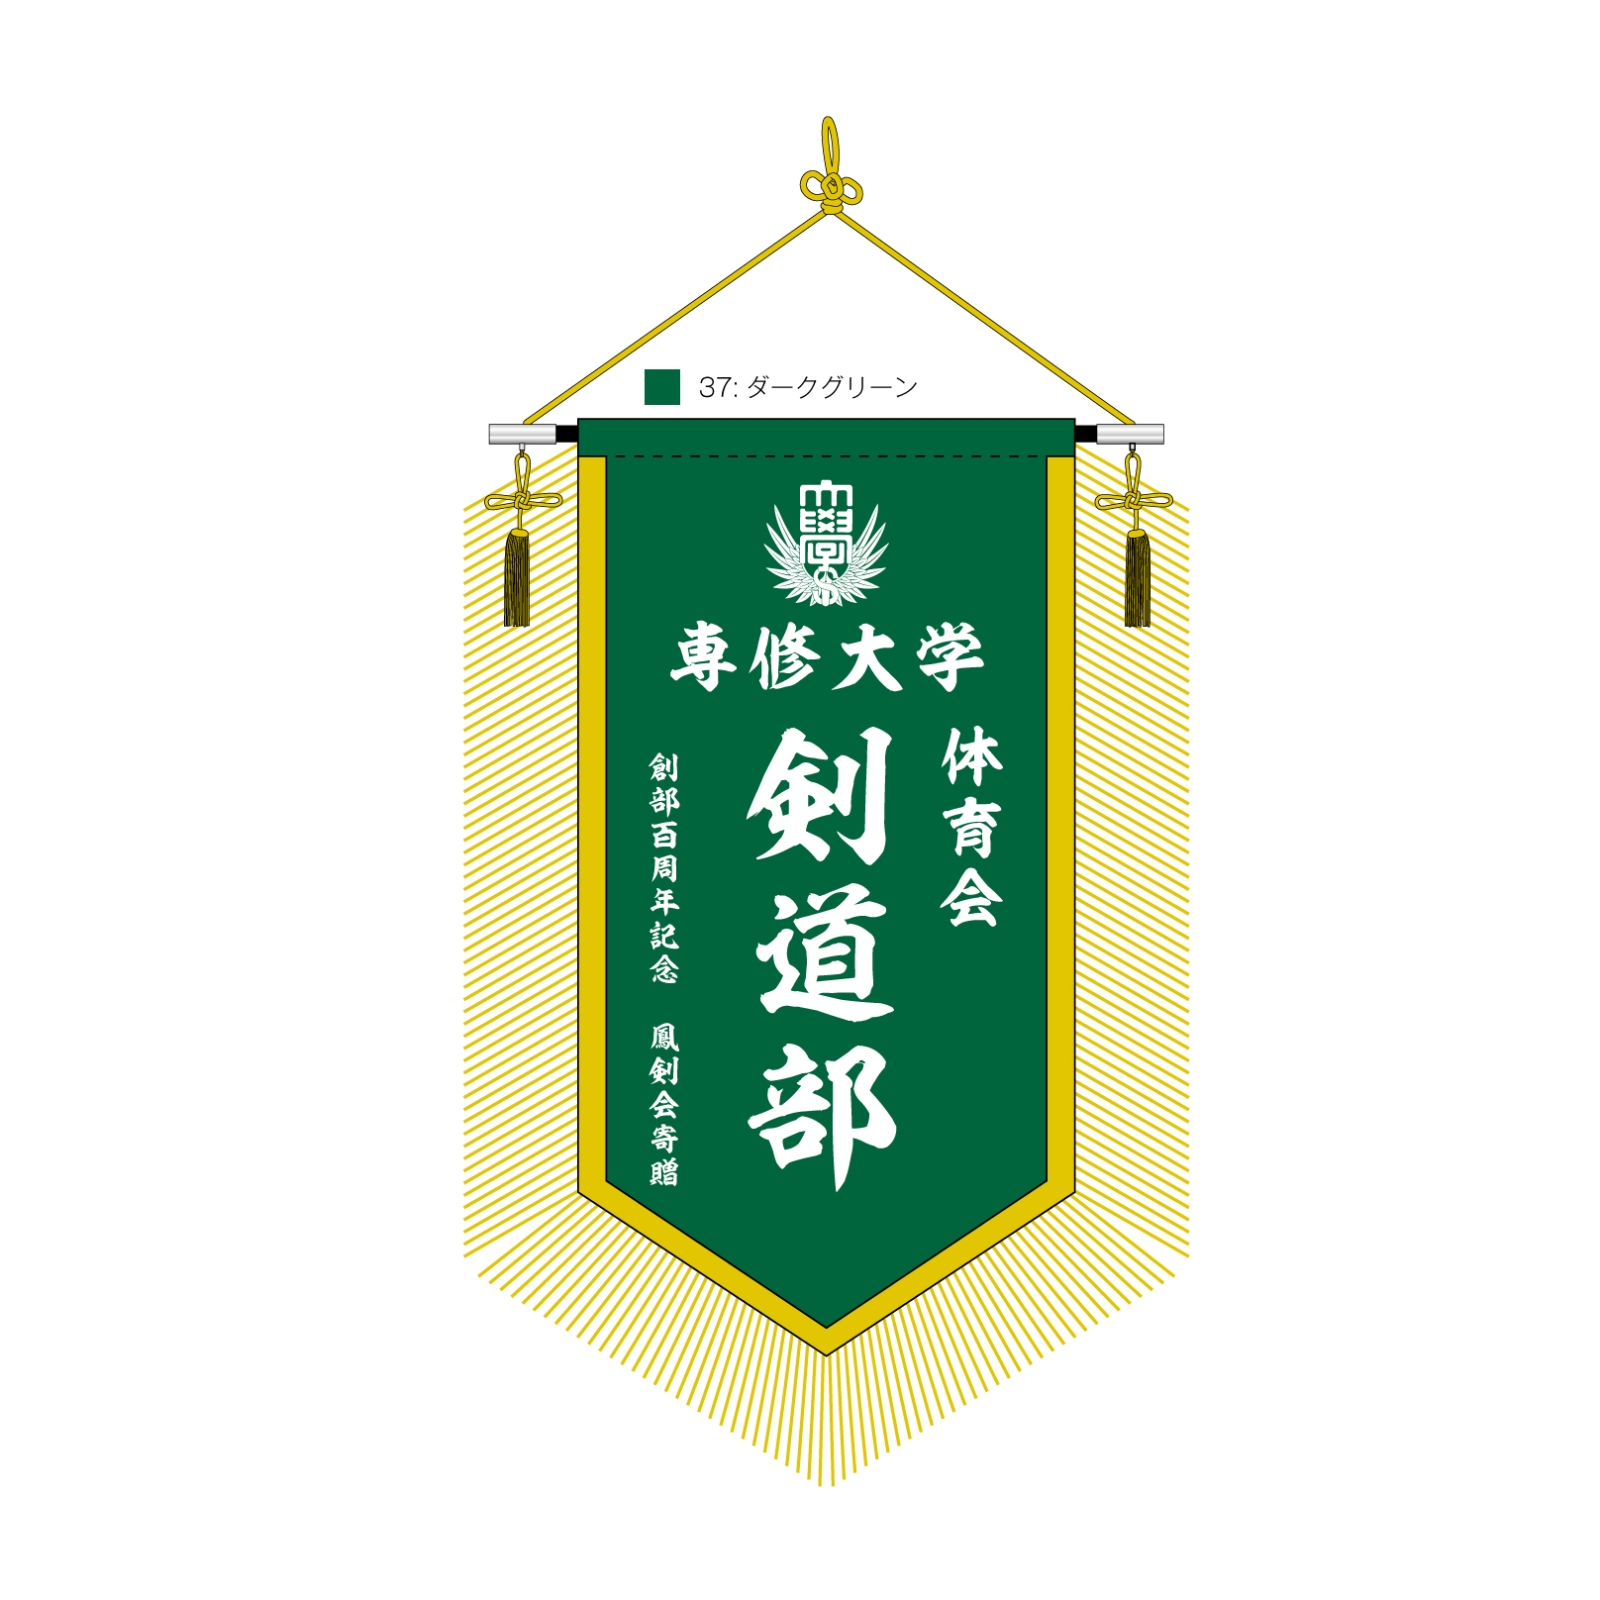 大学の剣道部の会旗